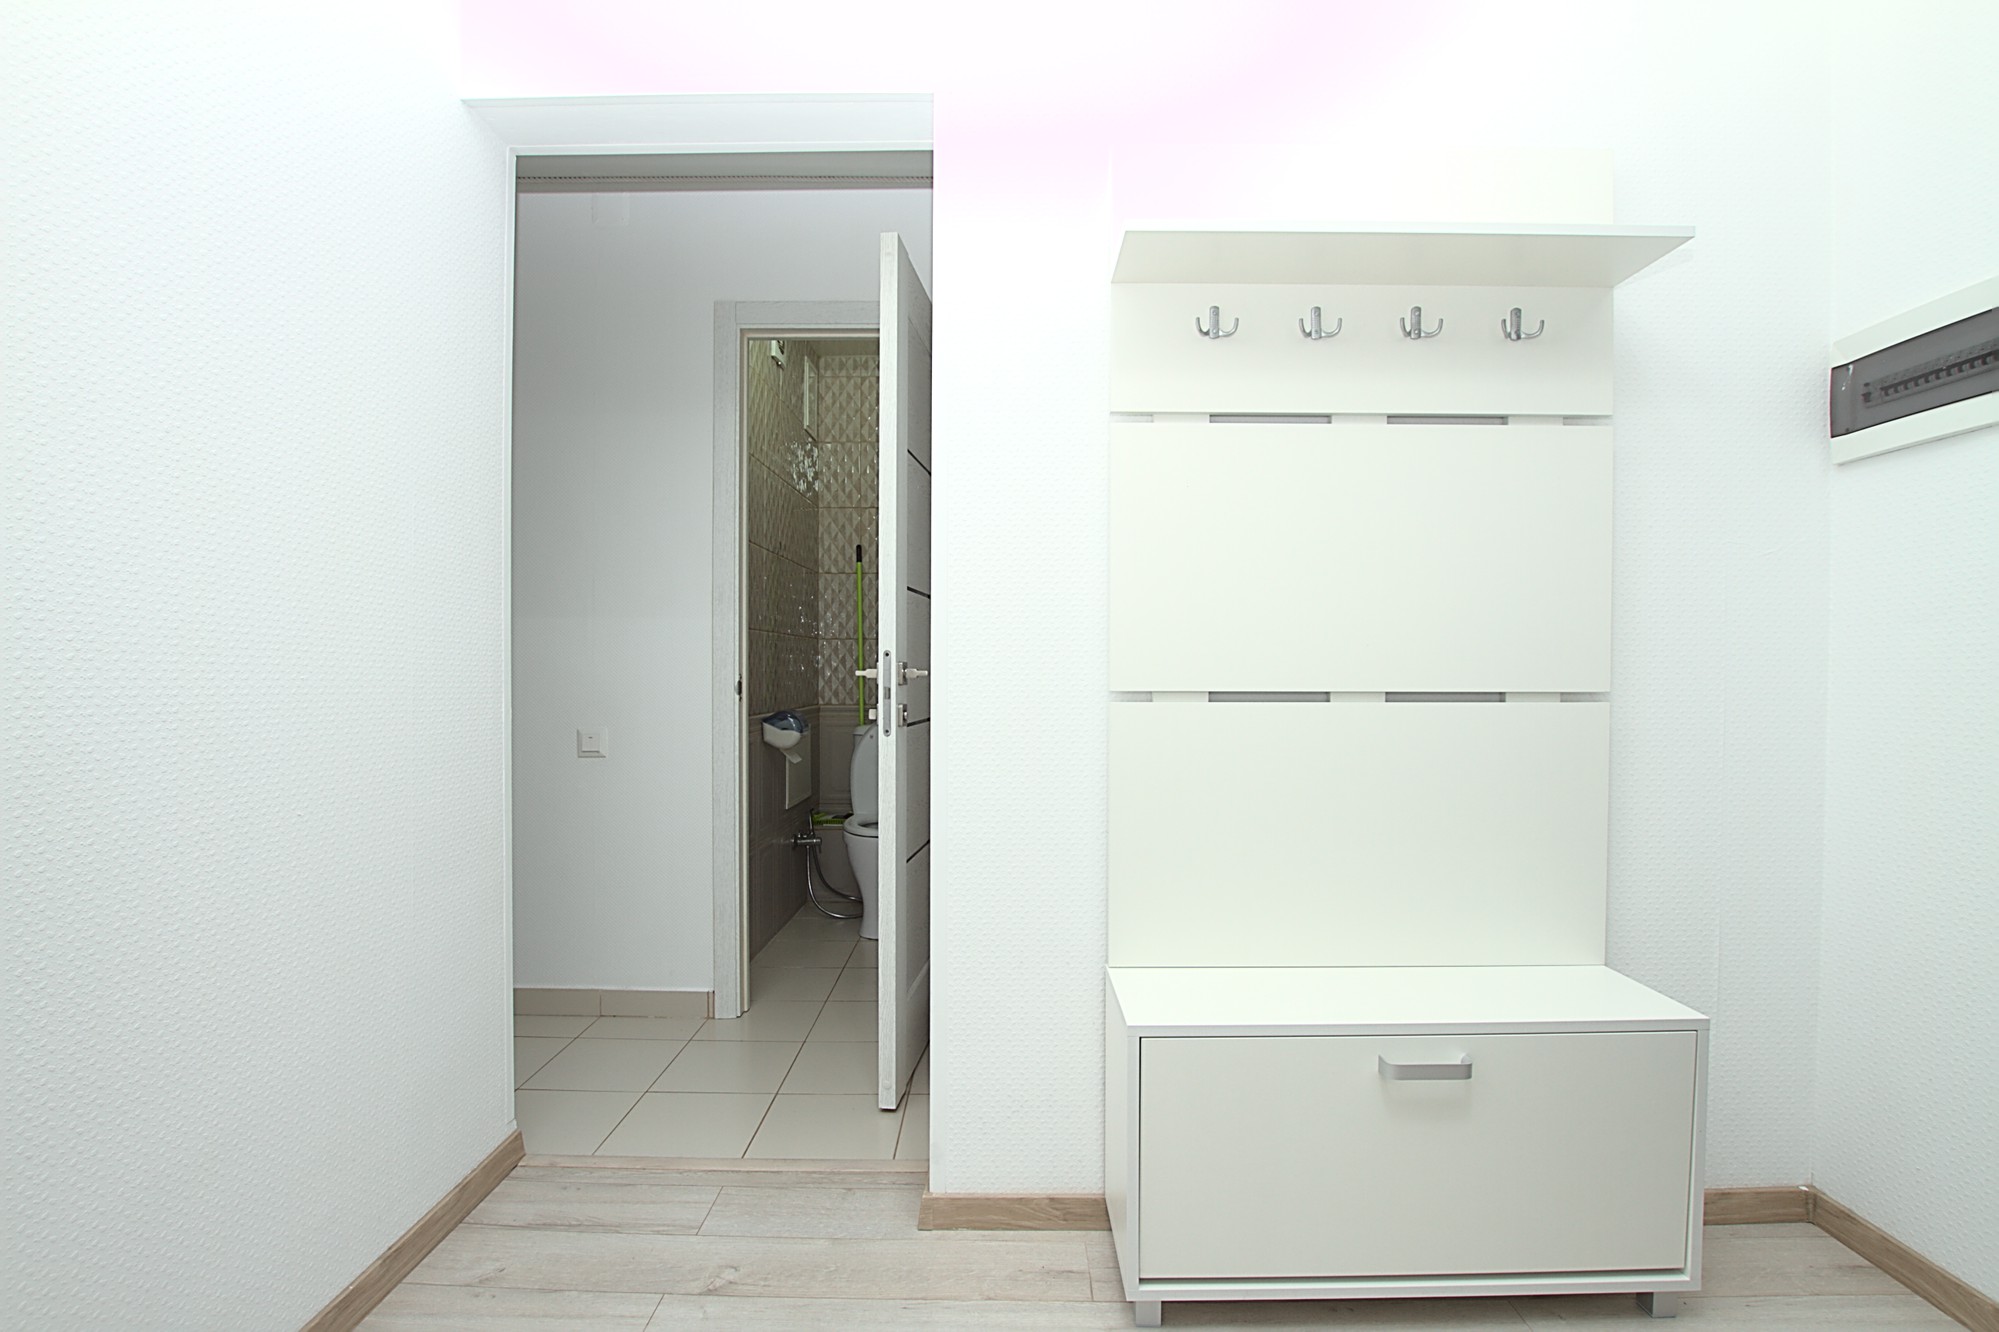 Частично меблированная 2-комнатная квартира: 2 комнаты, 1 спальня, 52 m²